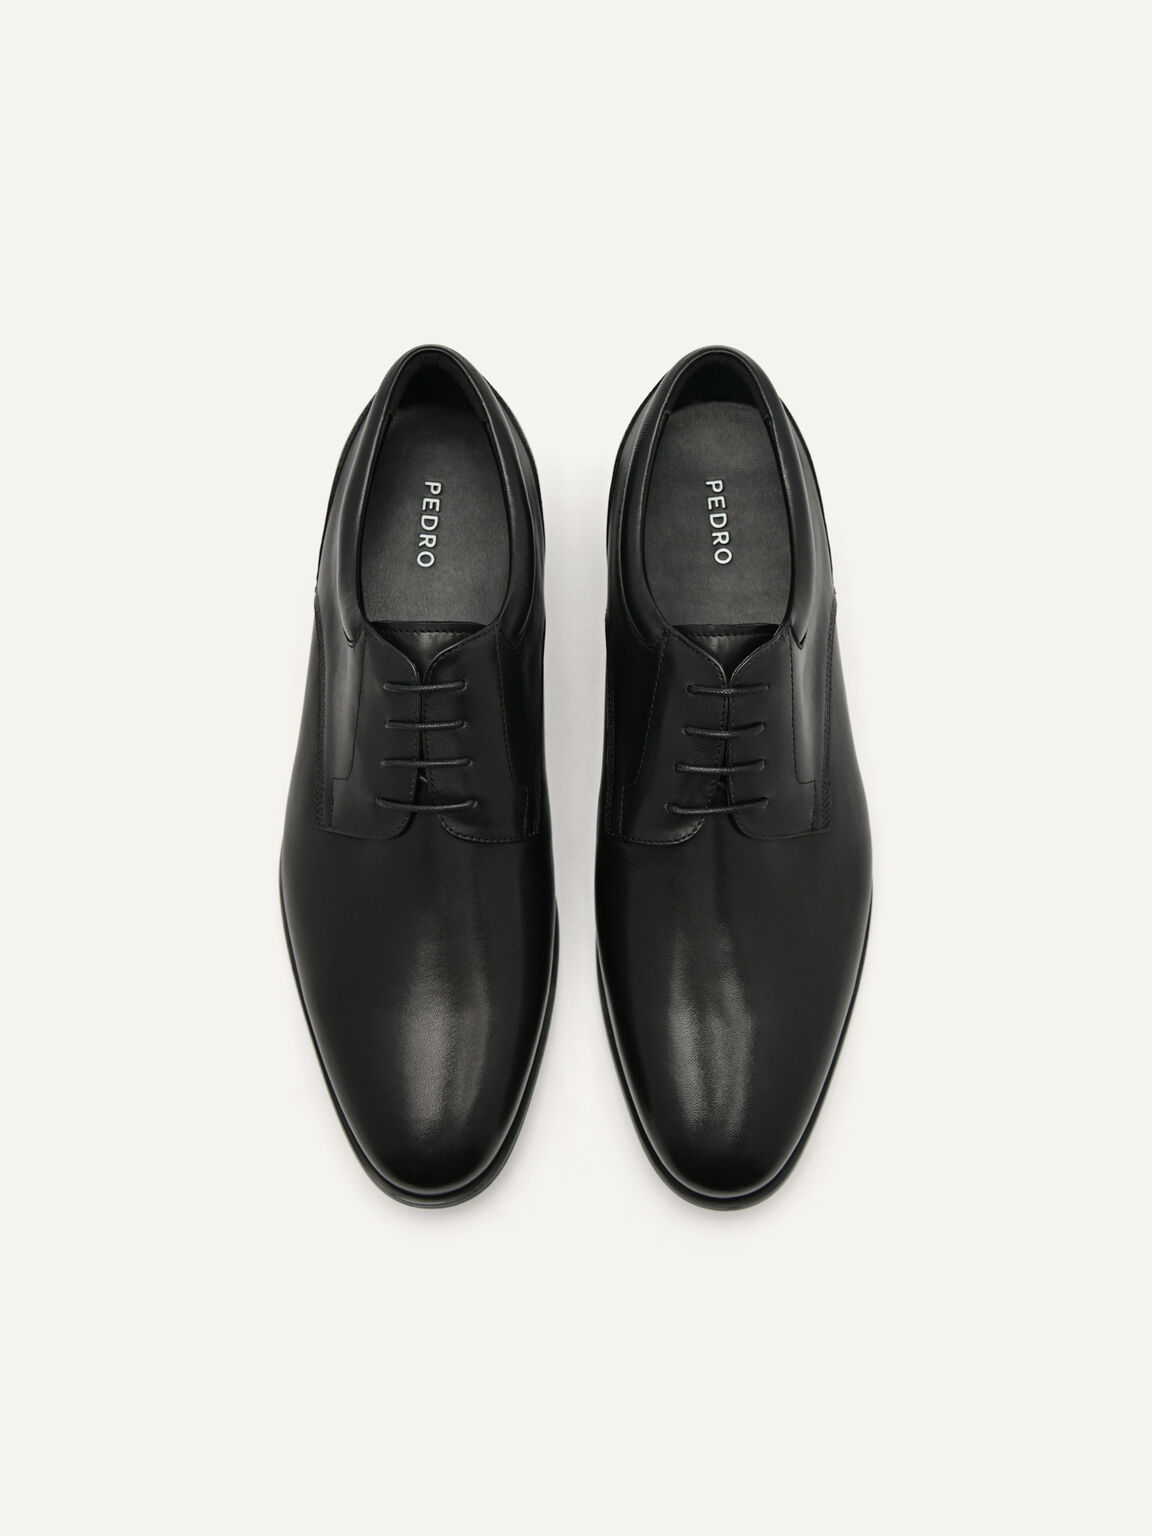 Elias Leather Derby Shoes, Black, hi-res